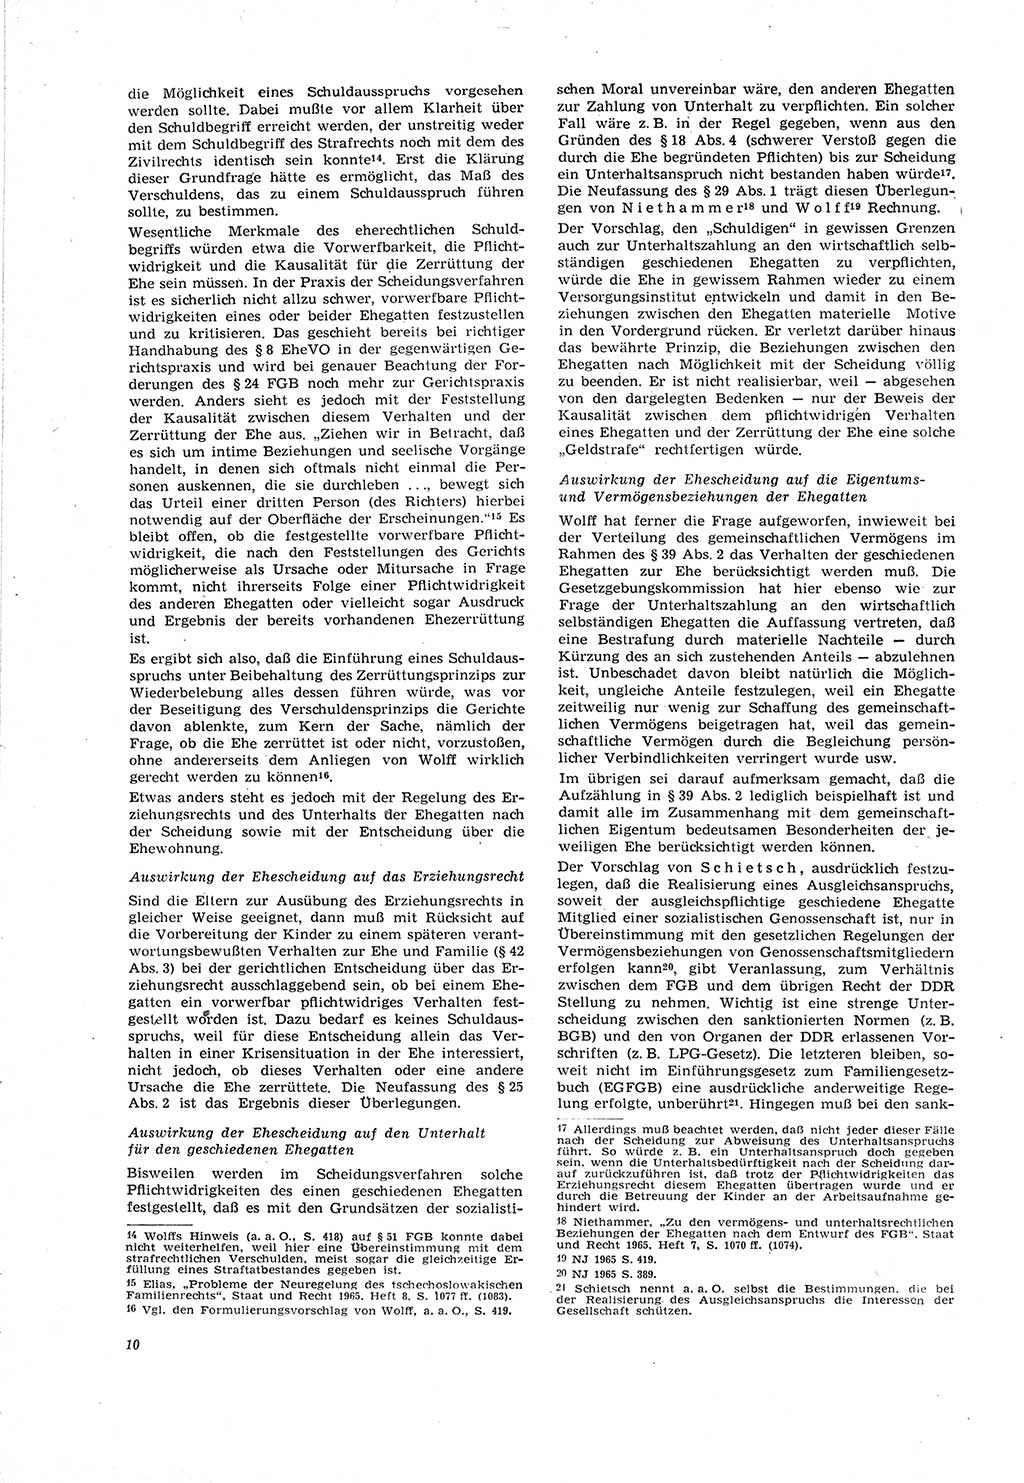 Neue Justiz (NJ), Zeitschrift für Recht und Rechtswissenschaft [Deutsche Demokratische Republik (DDR)], 20. Jahrgang 1966, Seite 10 (NJ DDR 1966, S. 10)